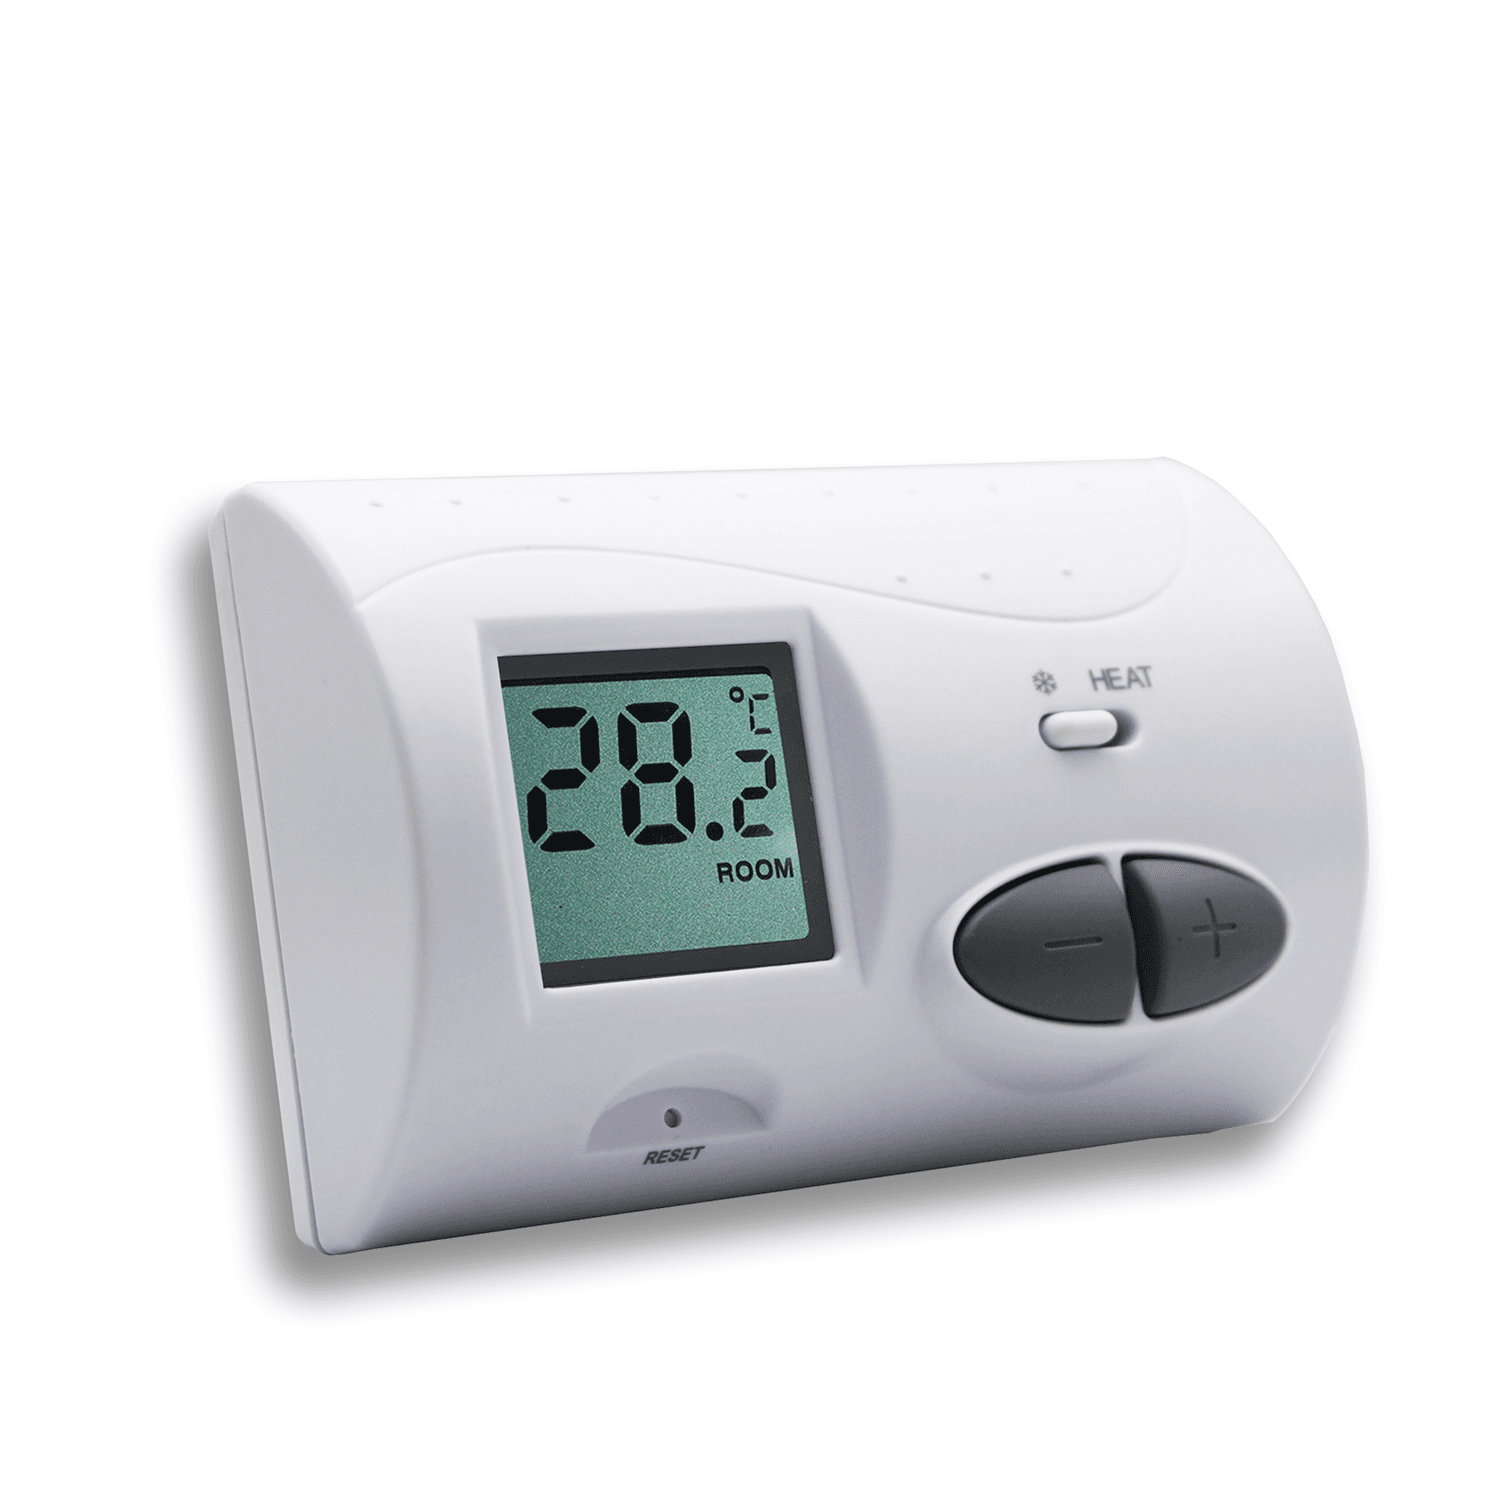 Selected image for NERO Sobni bežični termostat bez programa Q3